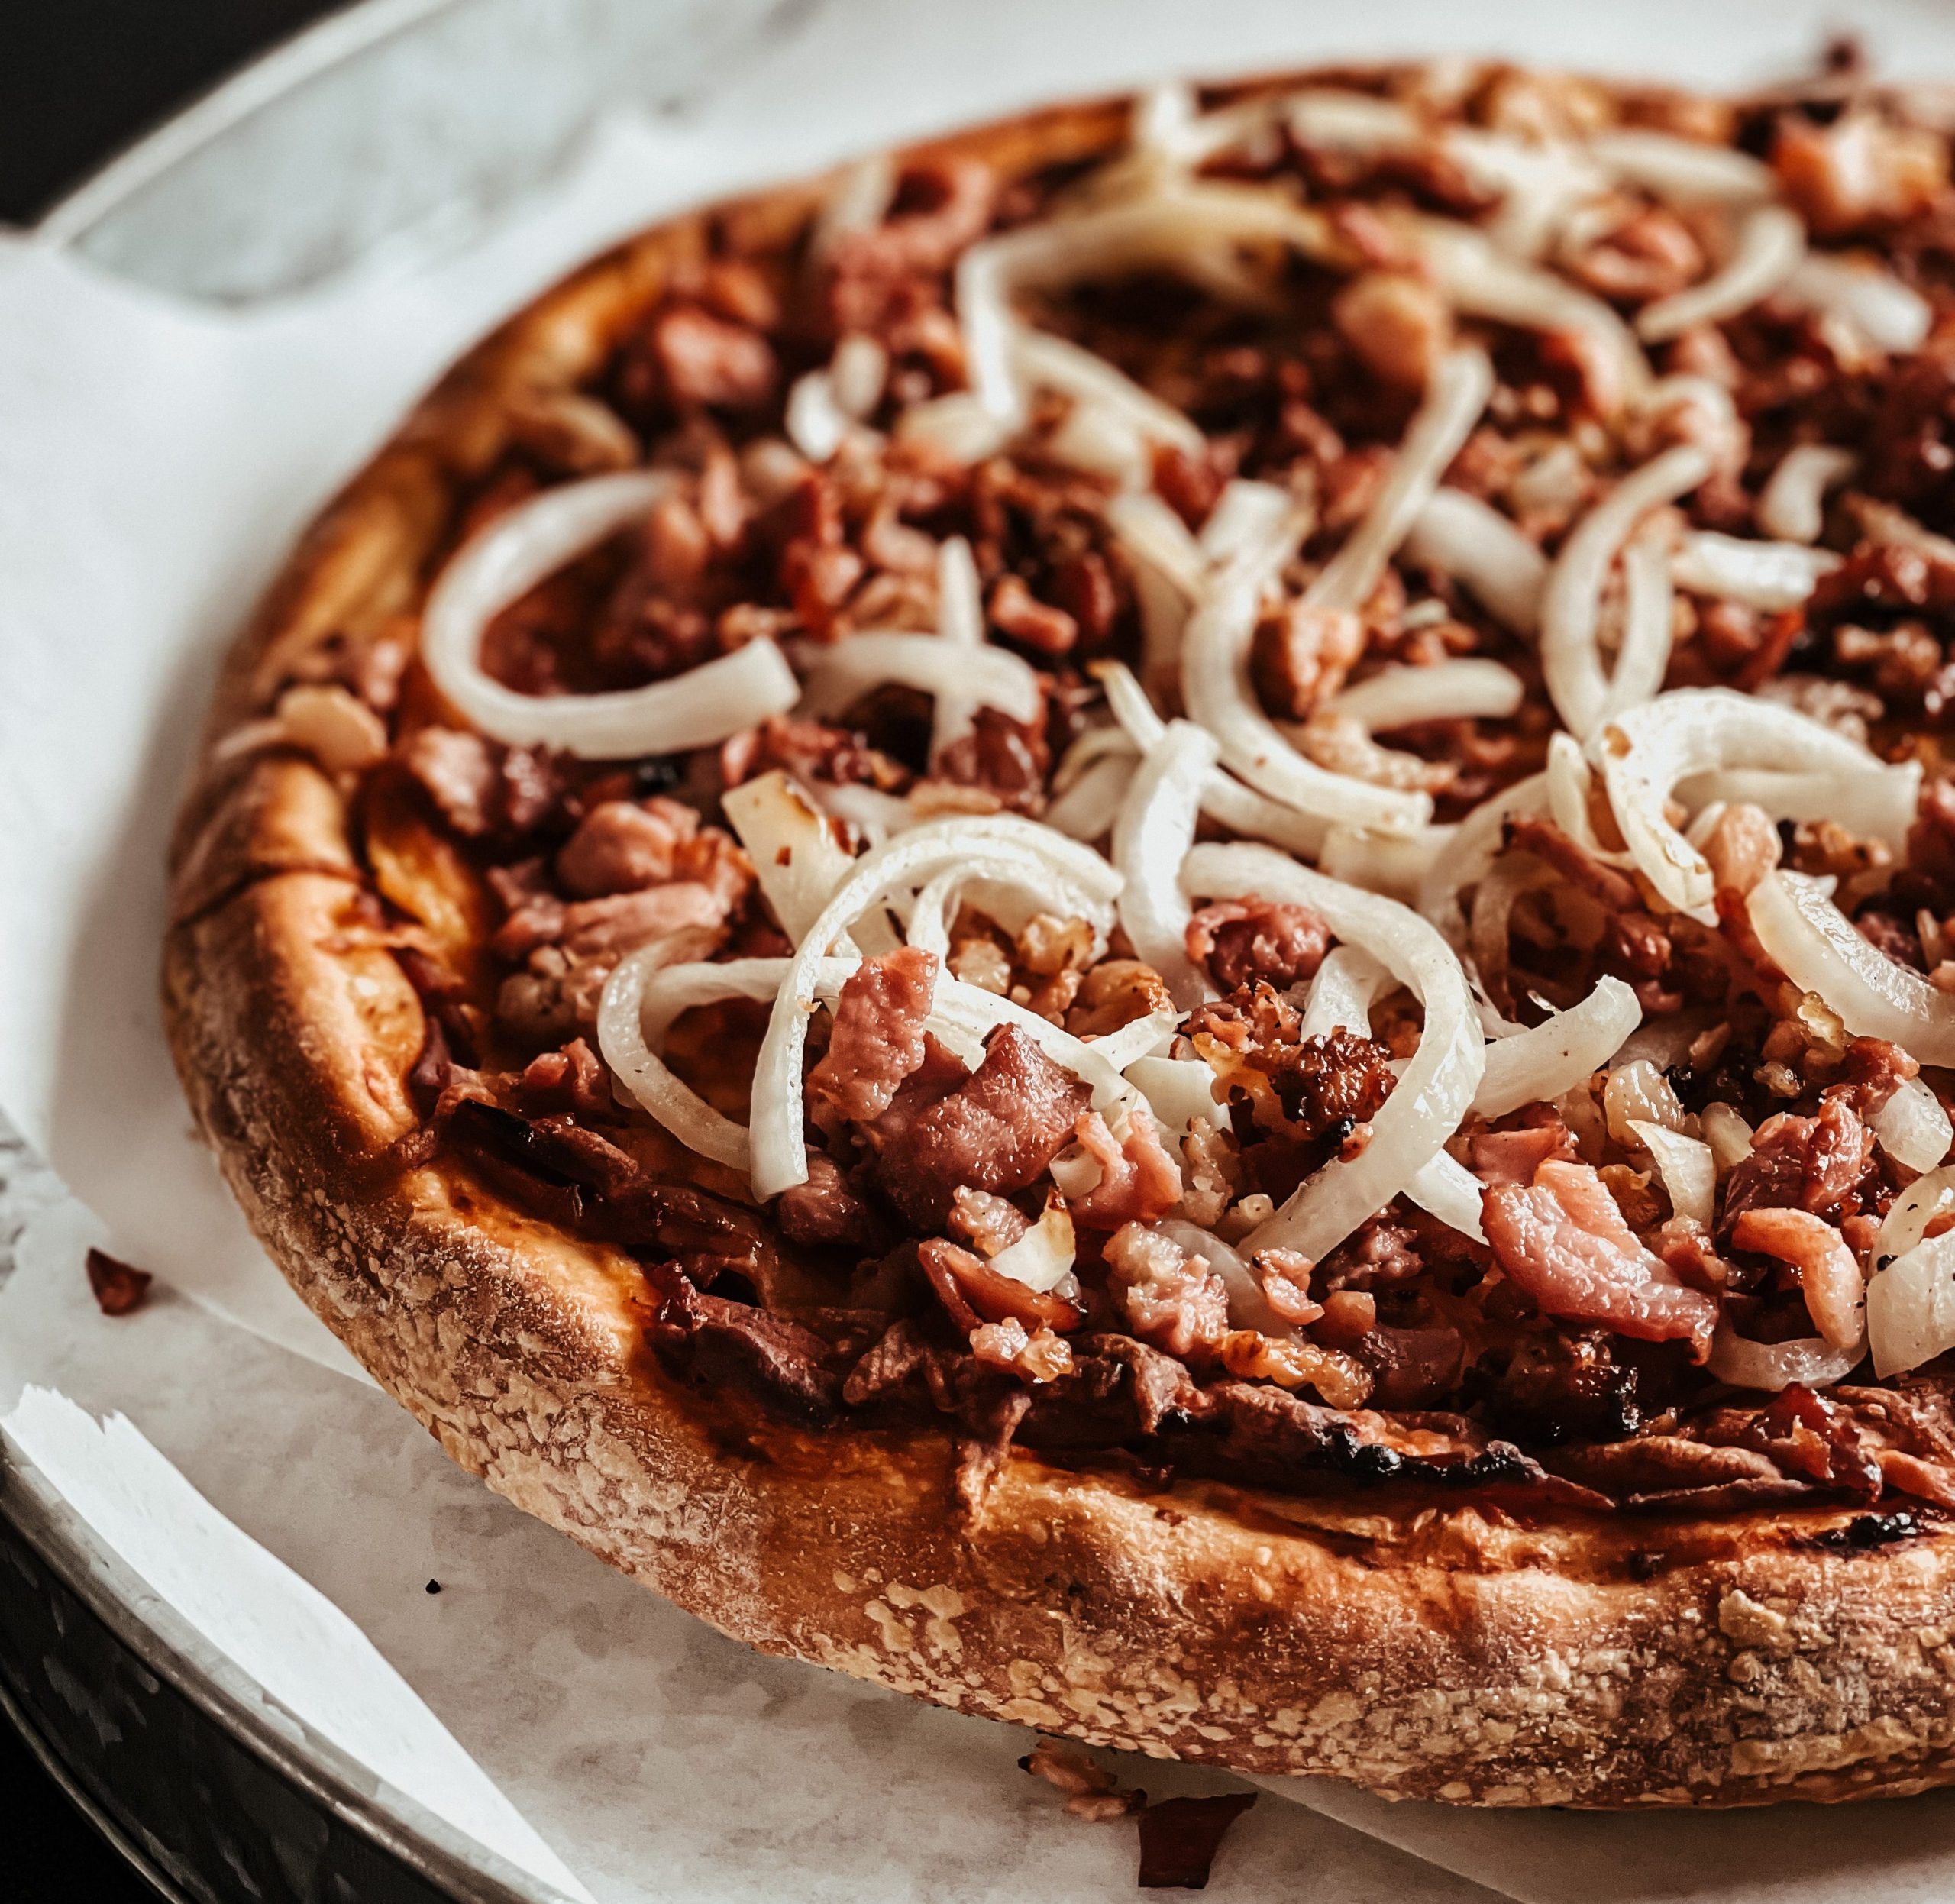 Pizza-bacon-oignon-2-scaled-aspect-ratio-264-257